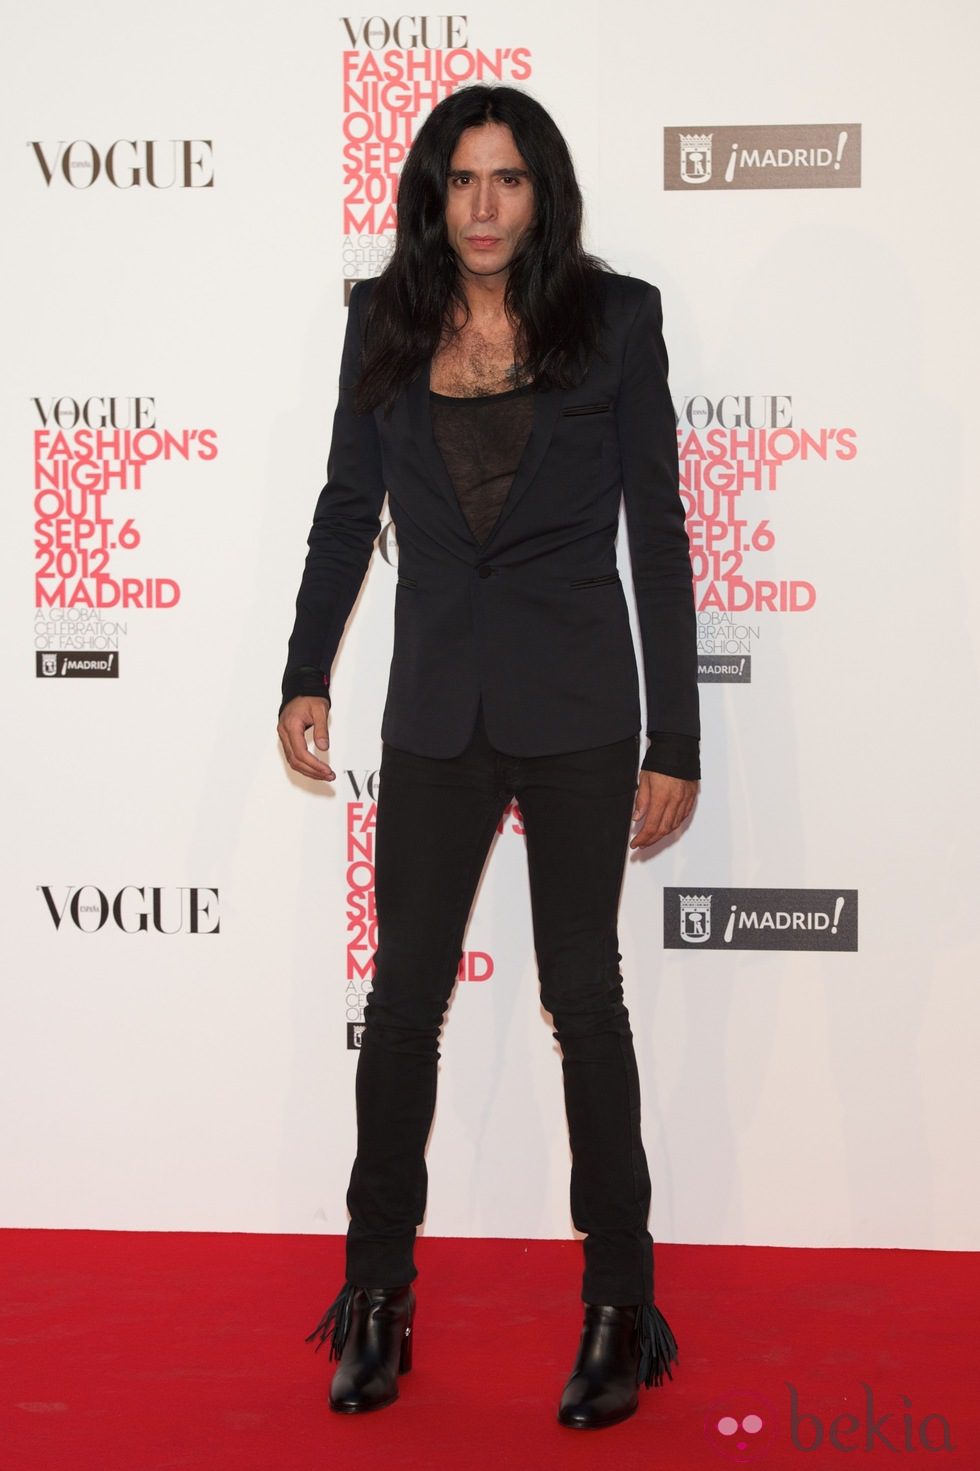 Mario Vaquerizo en la Vogue Fashion's Night Out 2012 en Madrid